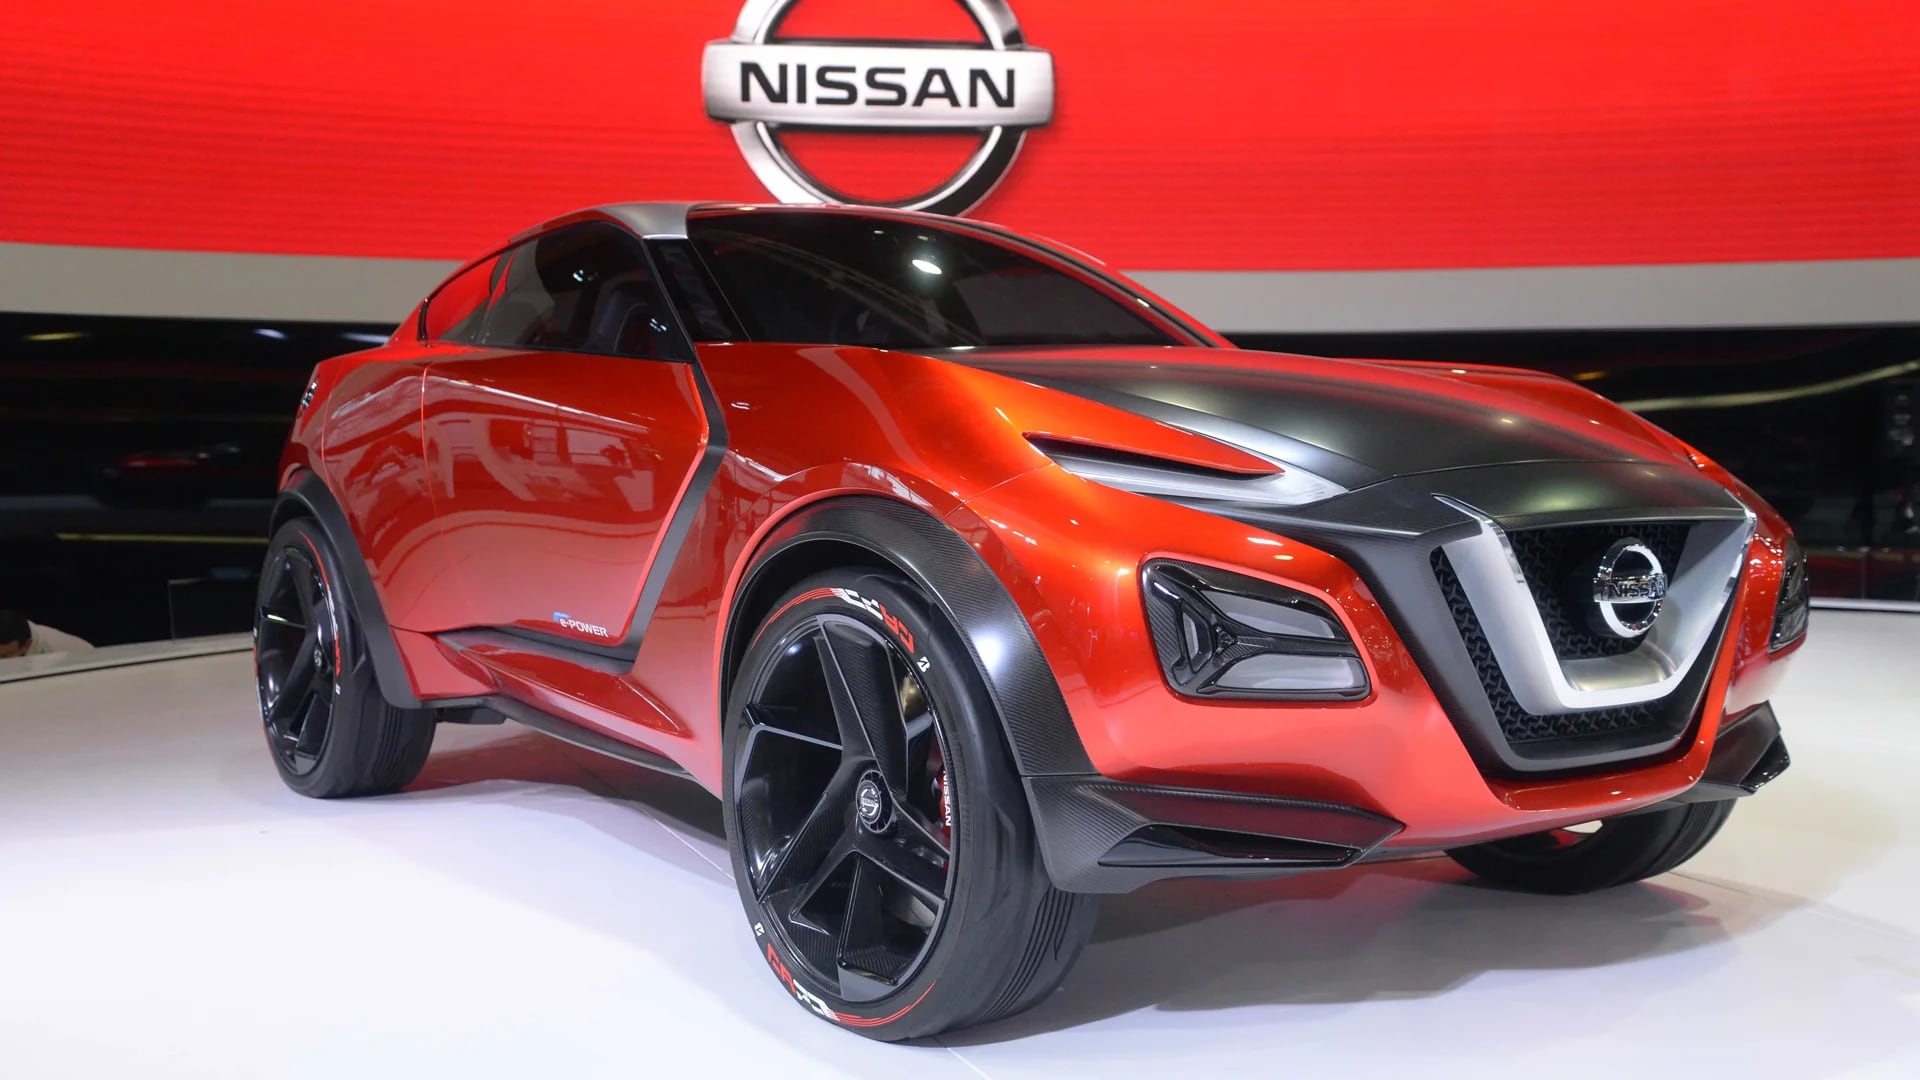 El Nissan Gripz combina las funciones de un deportivo con una estética crossover (Enrique Abatte)